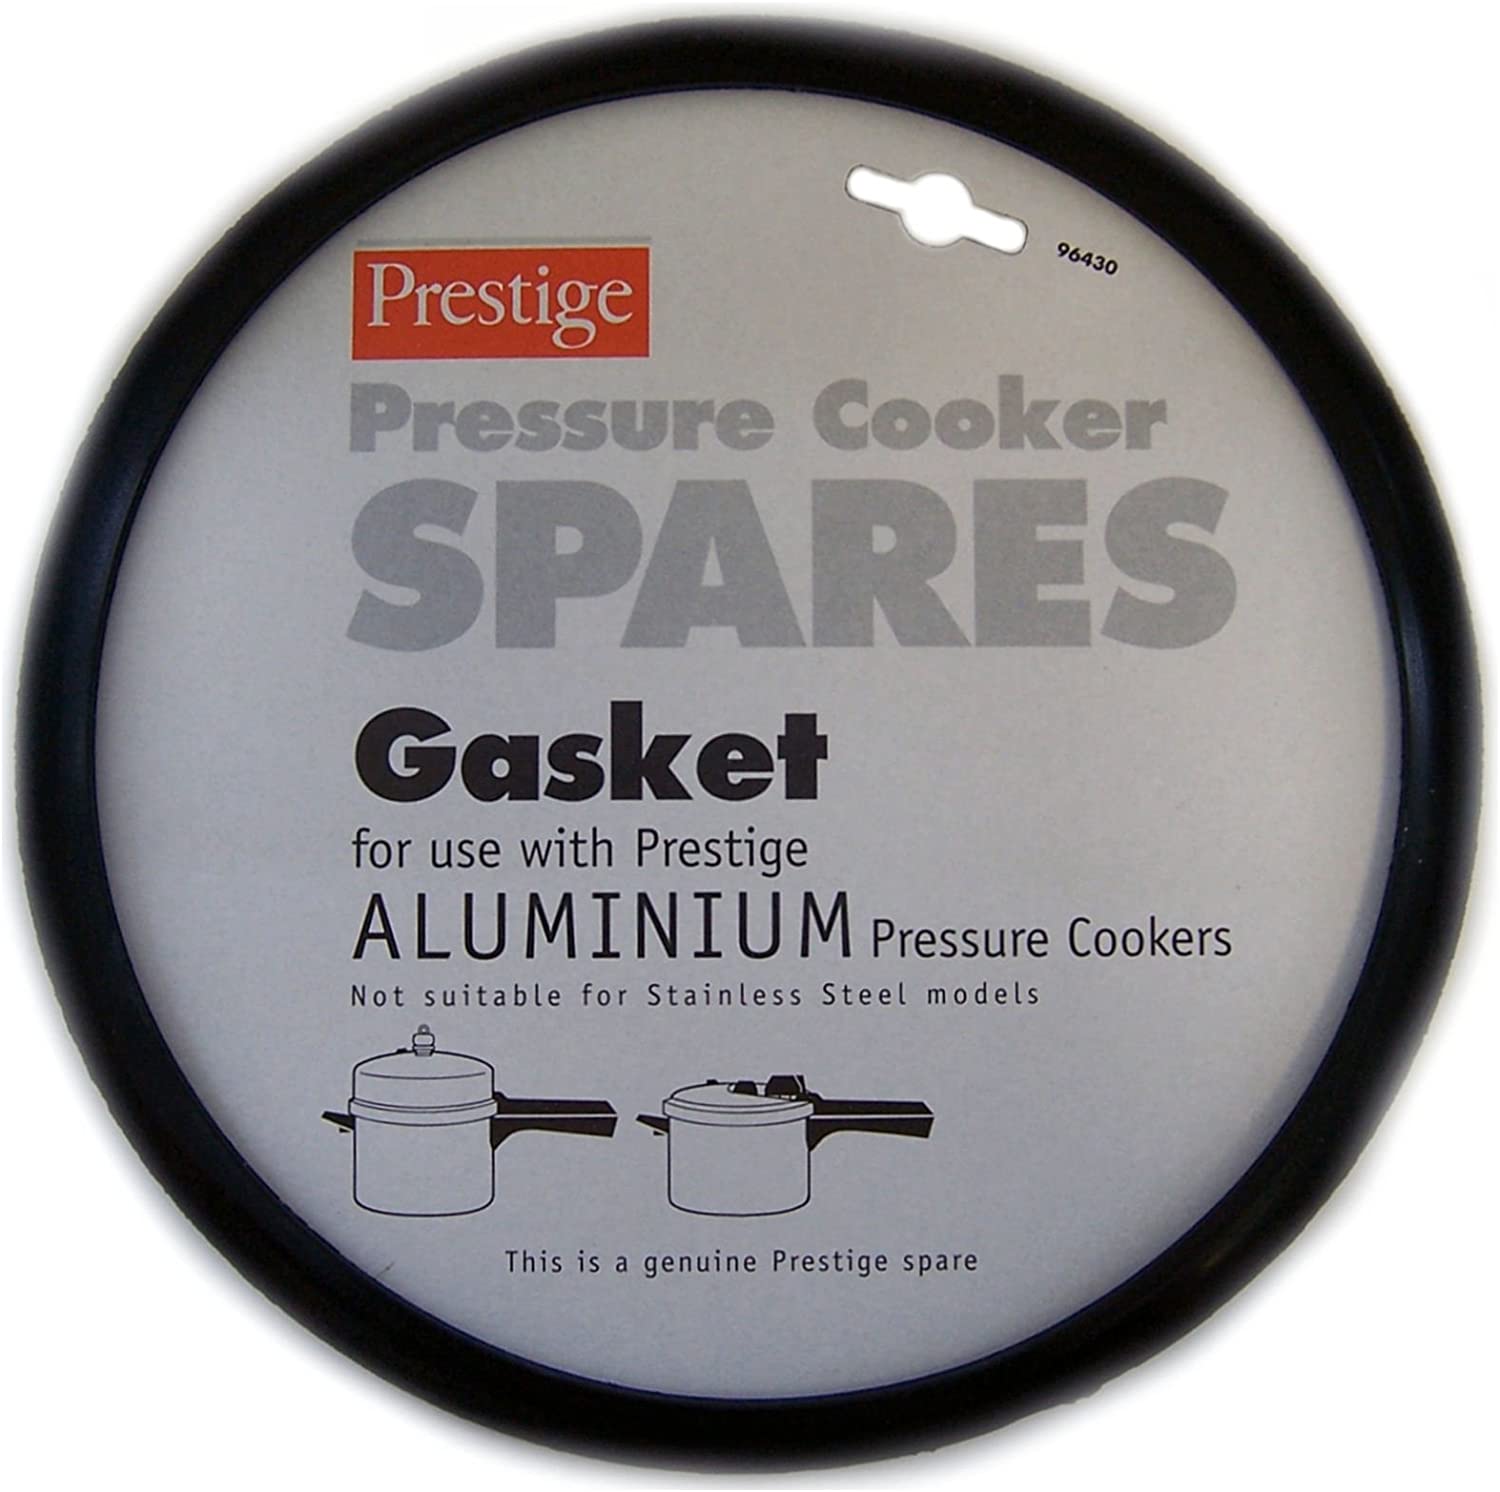 Prestige 96430 Pressure Cooker Spares Aluminium Gasket - Black